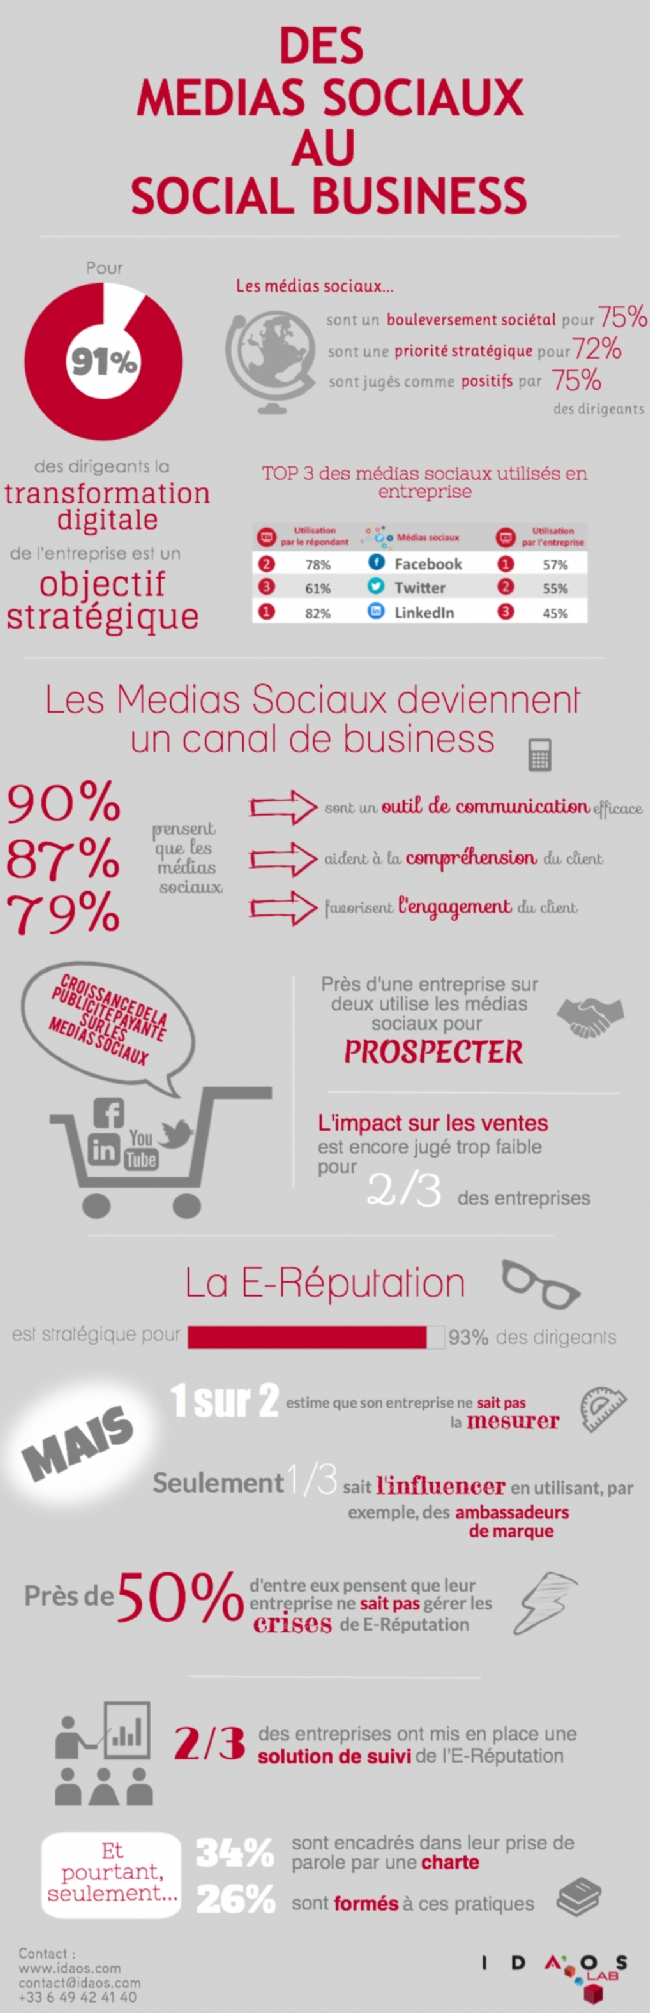 Infographie 101 - Les-reseaux-sociaux-canal-business-encore-mal-maitrises